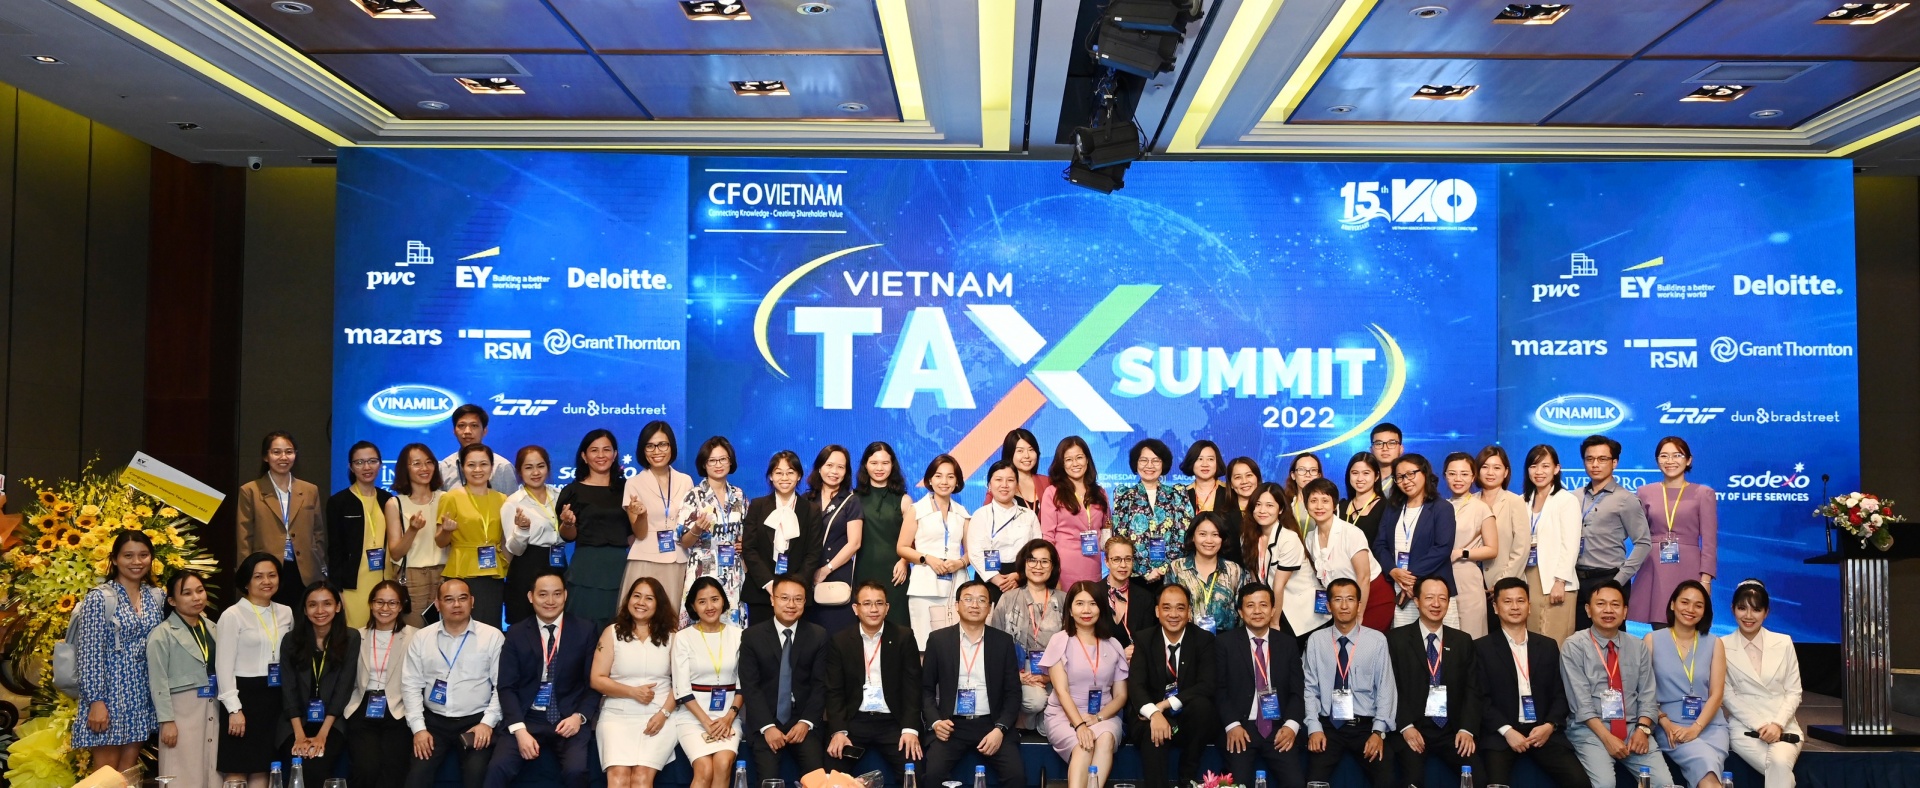 Vietnam Tax Summit 2022 covers up-to-date tax legislation